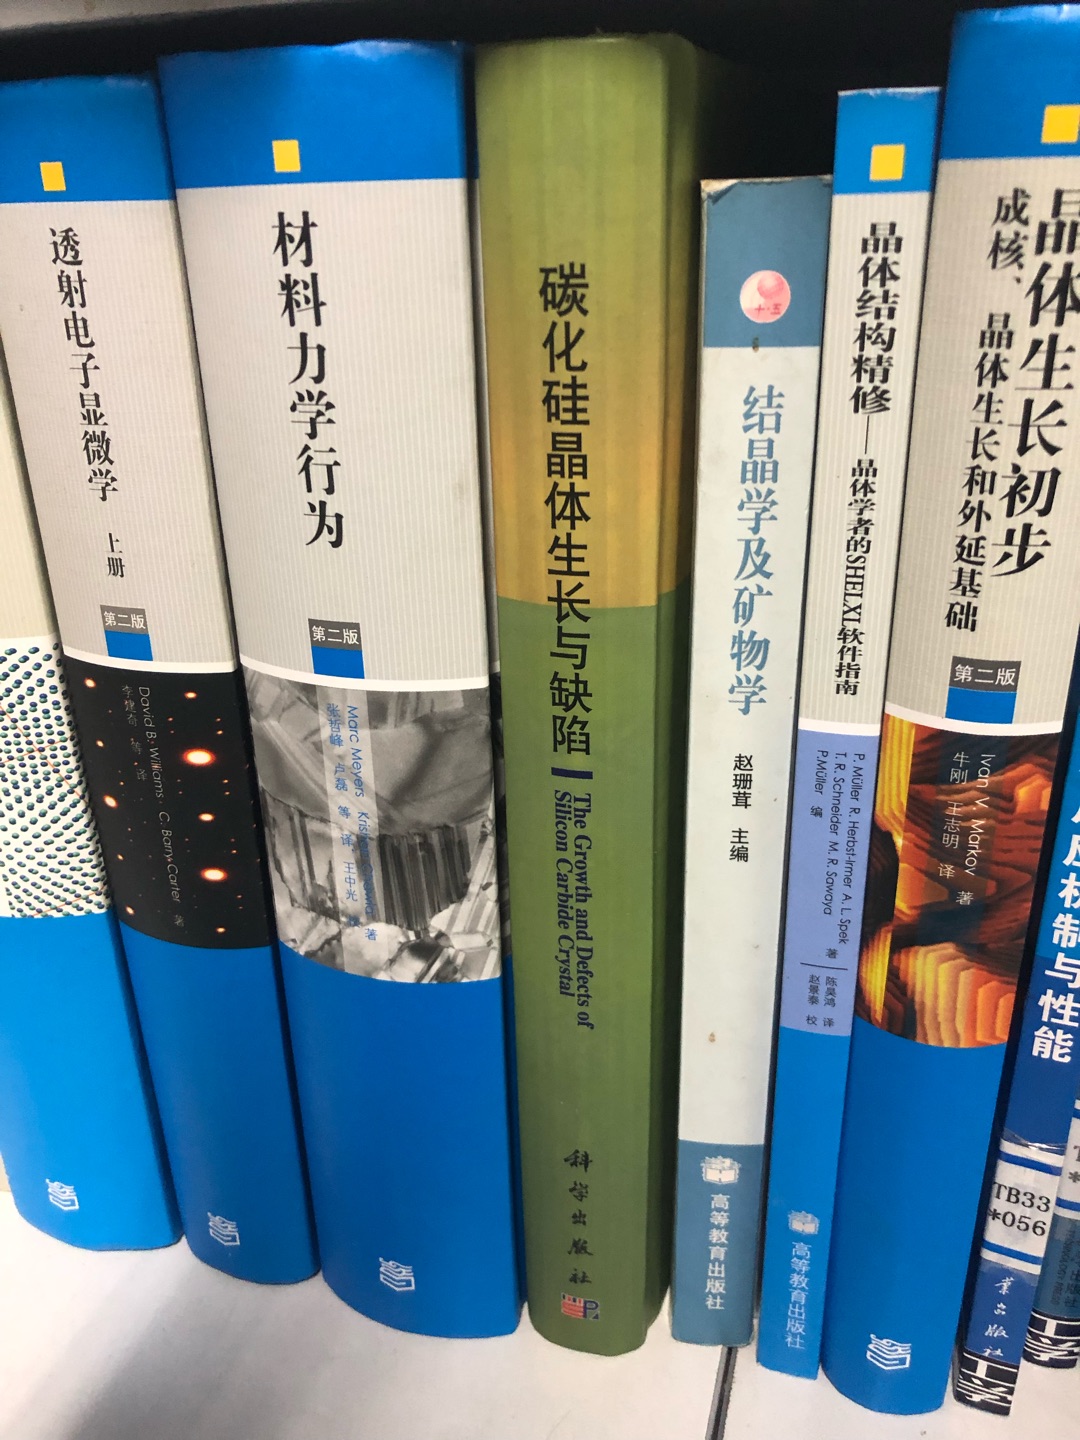 材料科学经典著作选译丛书太棒了，每本都值得购买和学习。